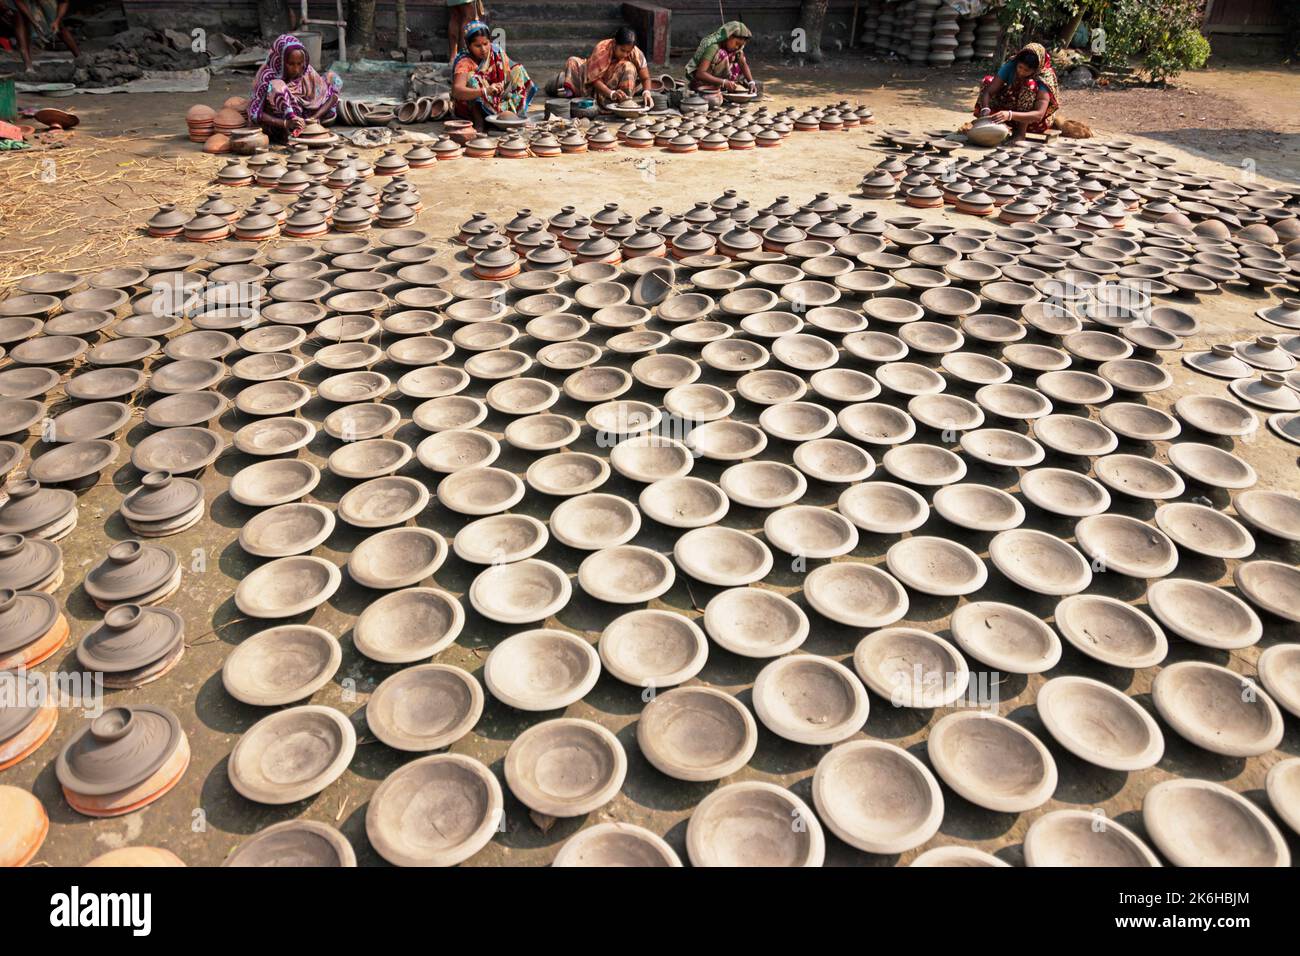 Les travailleurs font des pots d'argile comme une forme d'affaires de poterie à vendre sur un marché. Les pots d'argile sont disposés pour sécher sous le soleil. Banque D'Images